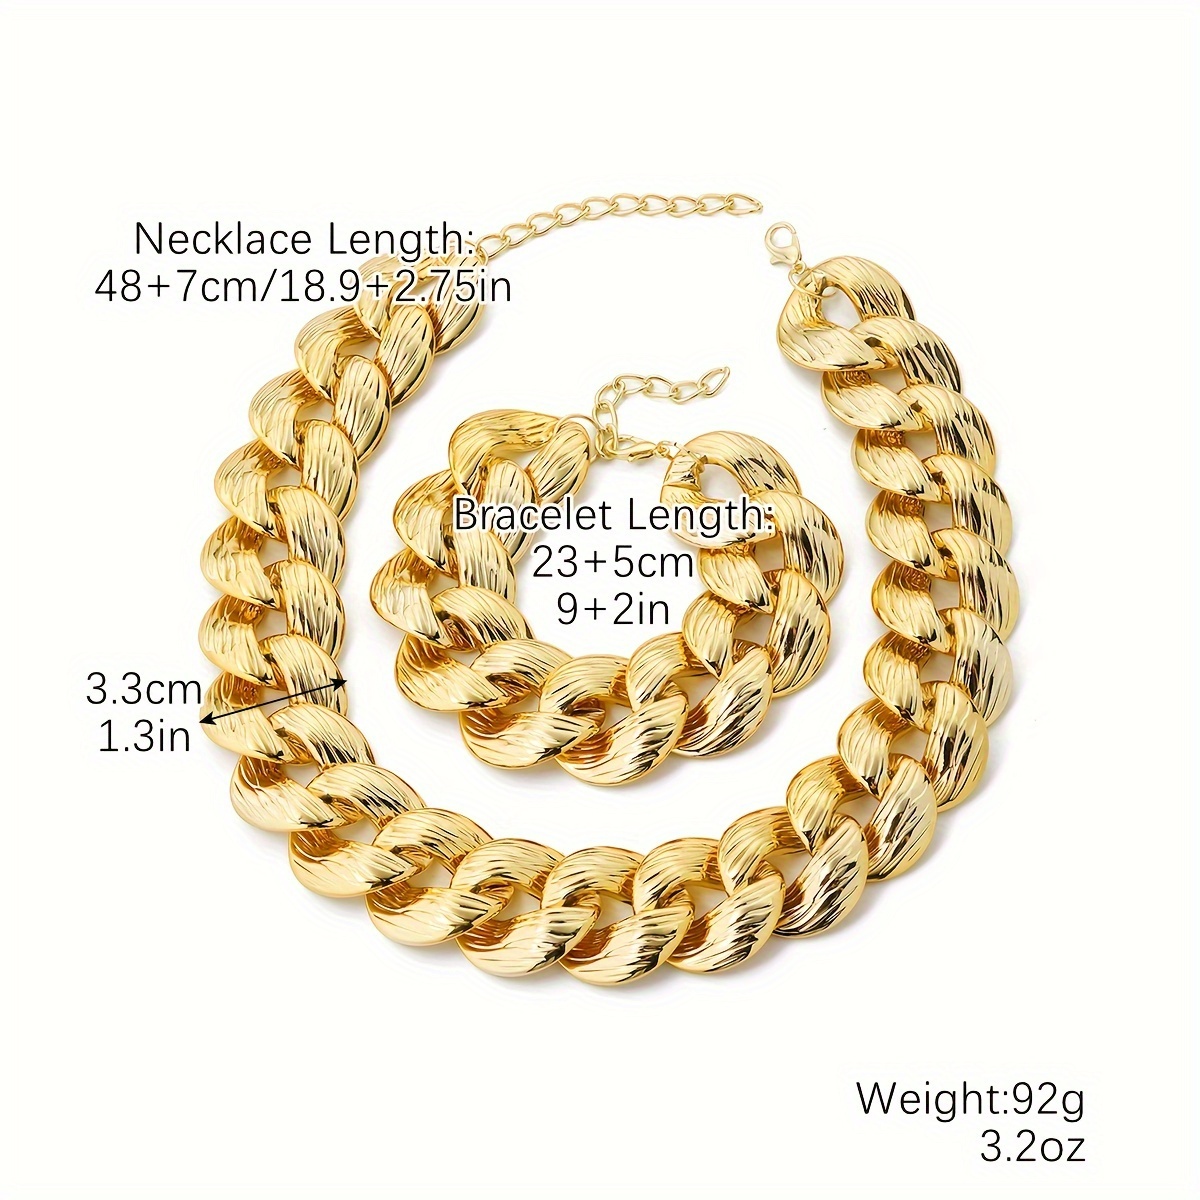 1 Necklace + 1 Bracelet Hip Hop Style Jewelry Set Chunky Cuban